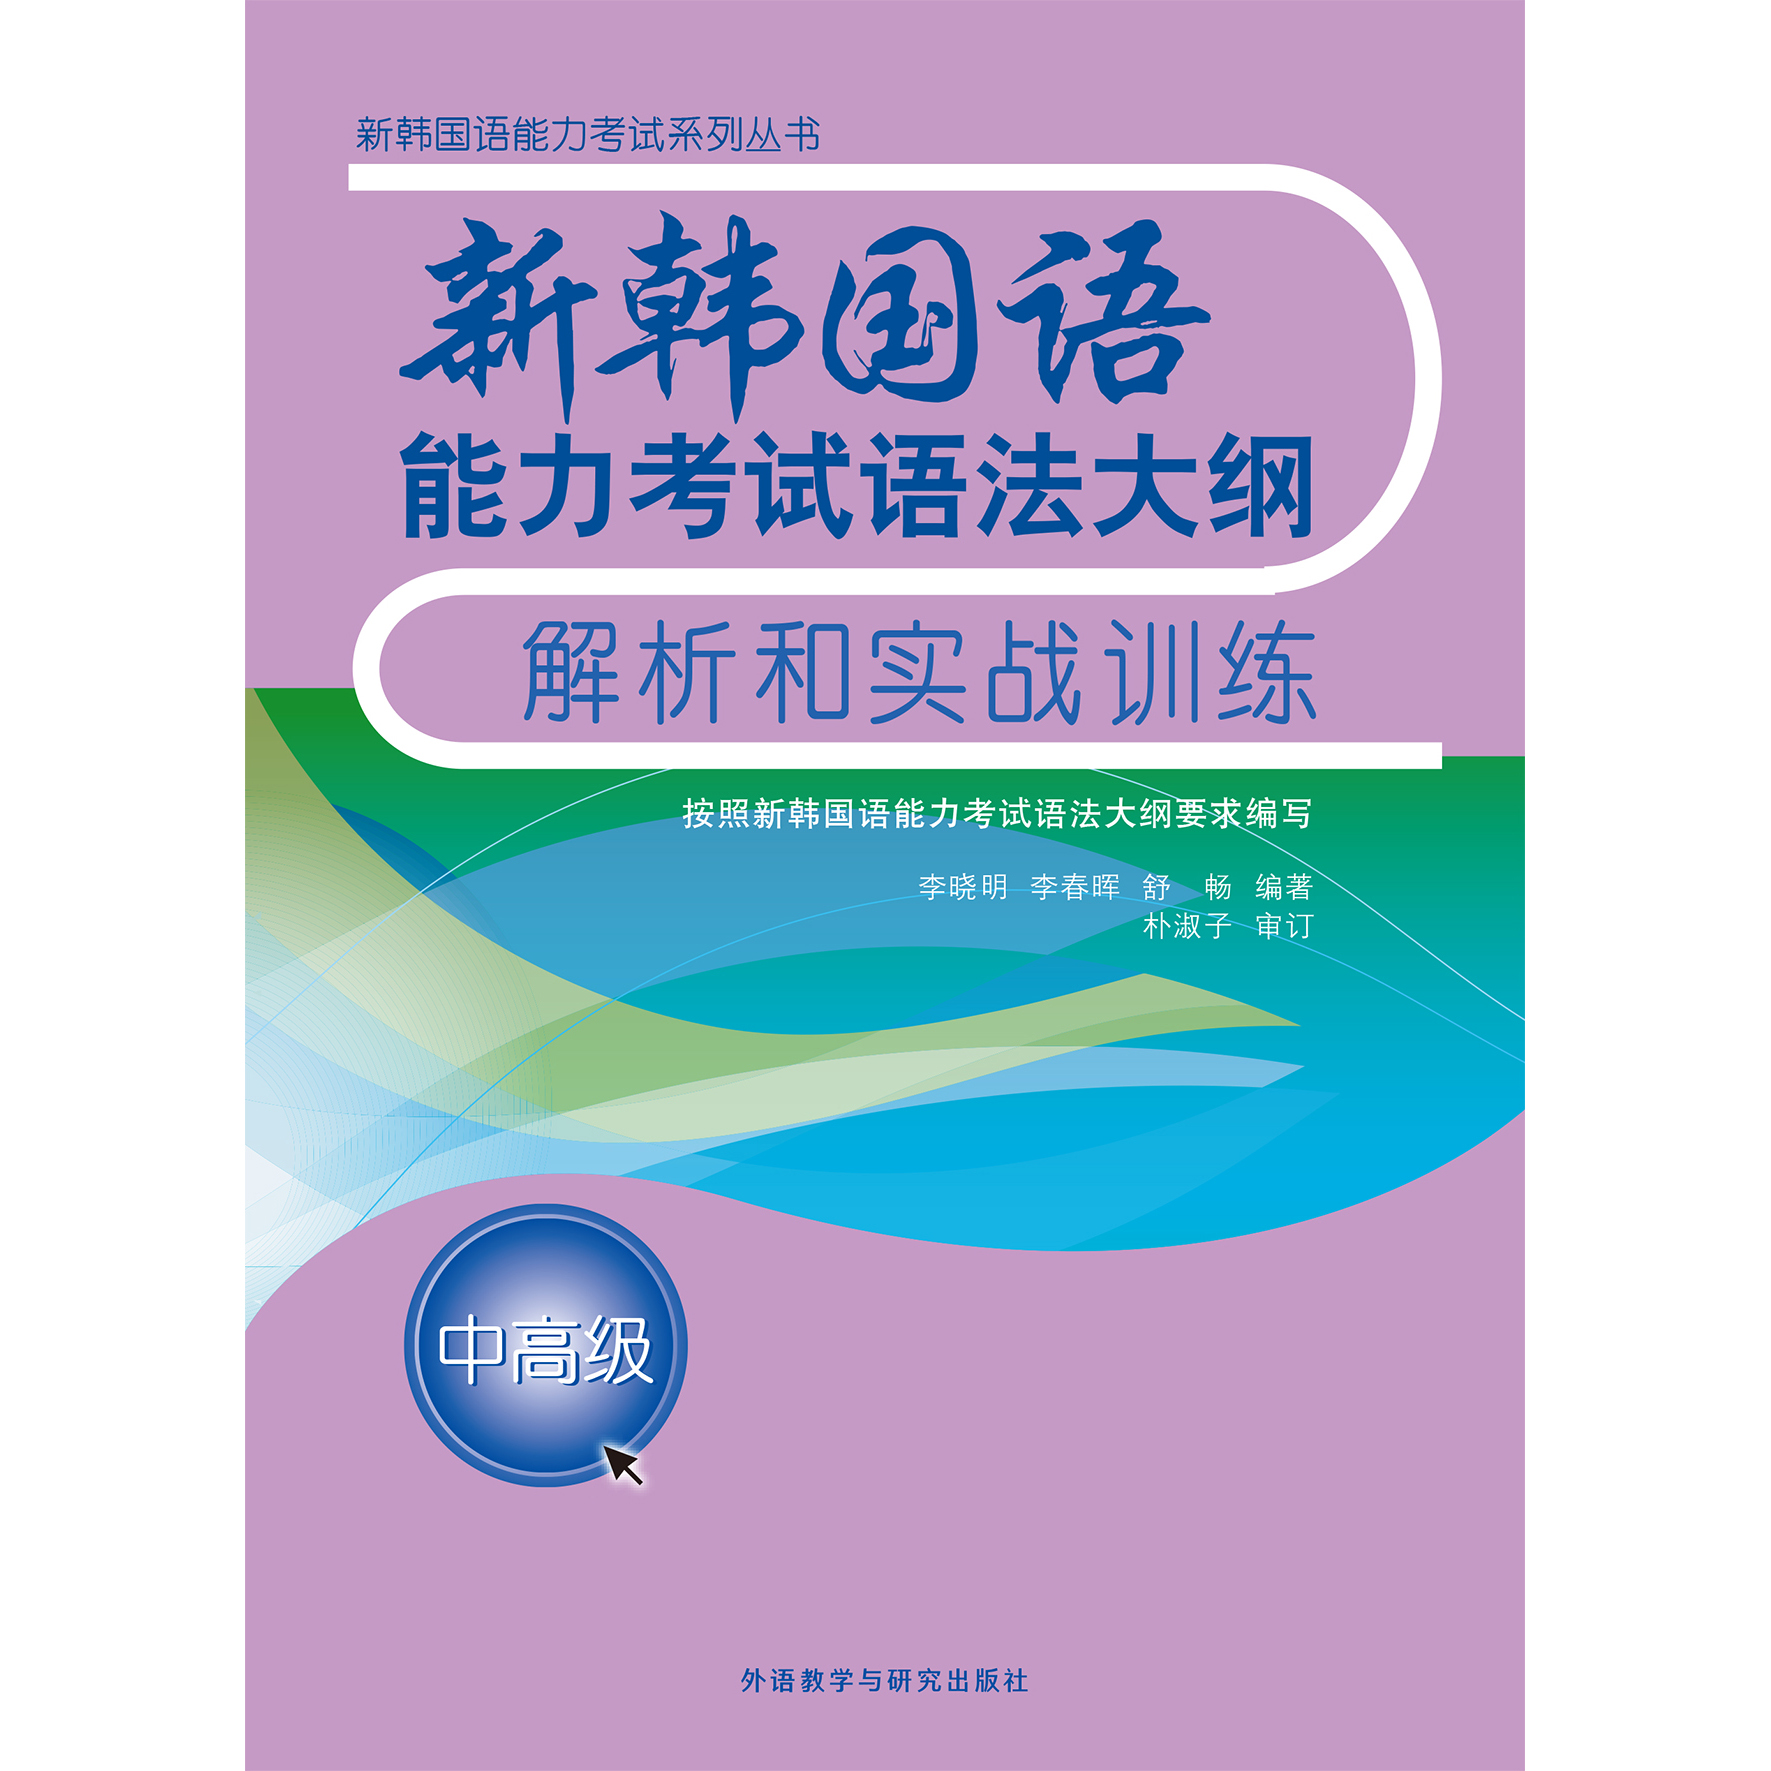 新韩国语能力考试语法大纲解析和实战训练(中高级)(17新)